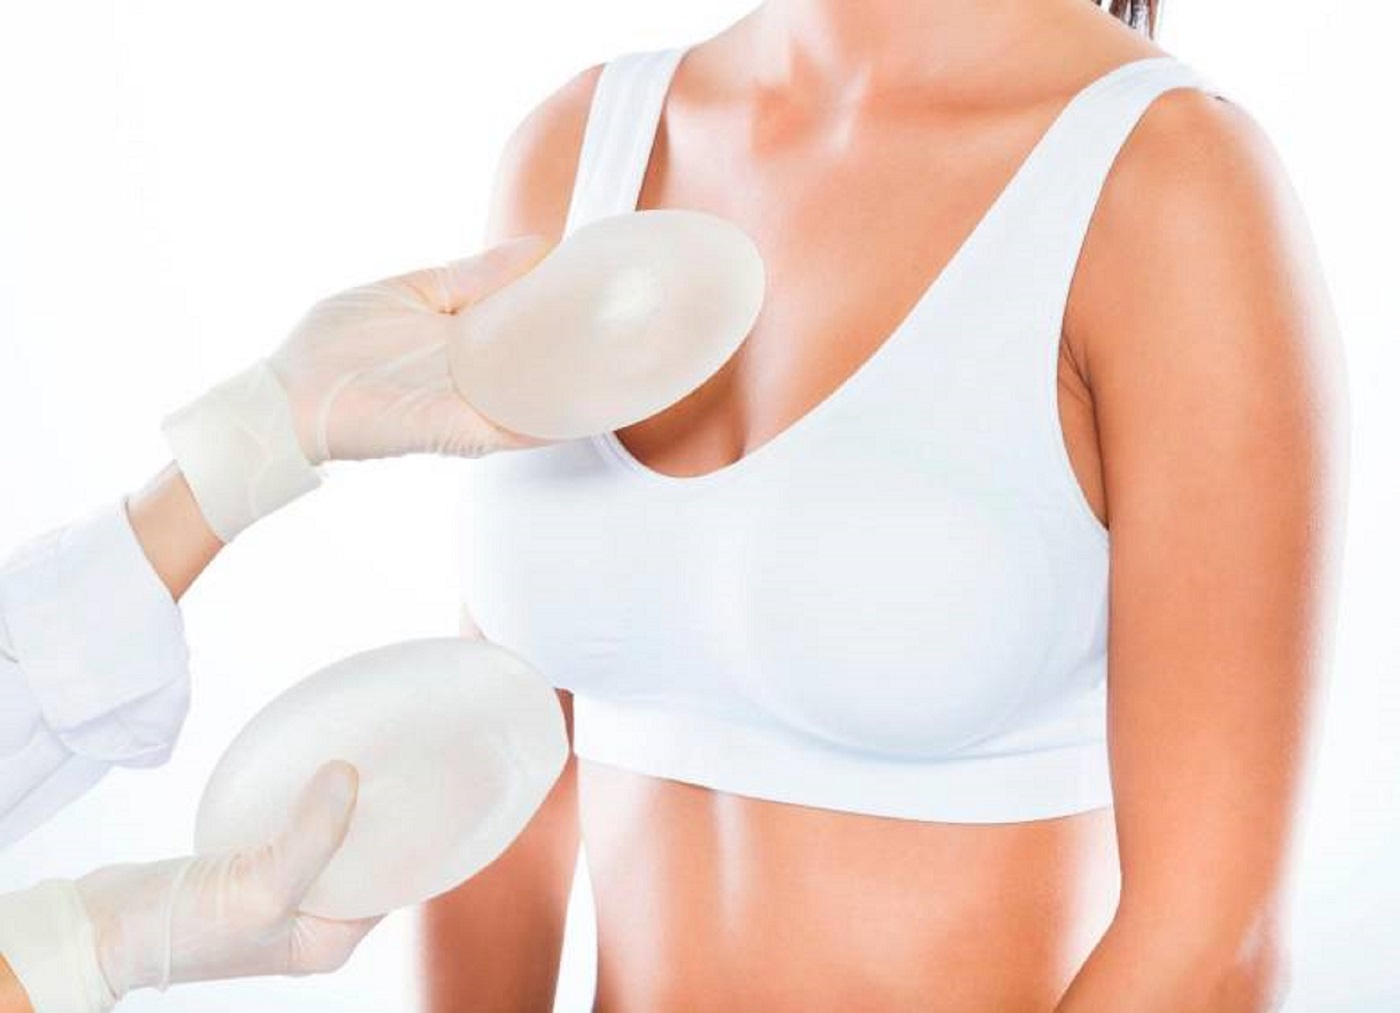 Explantación mamaria: Respondemos 14 preguntas sobre esta cirugía